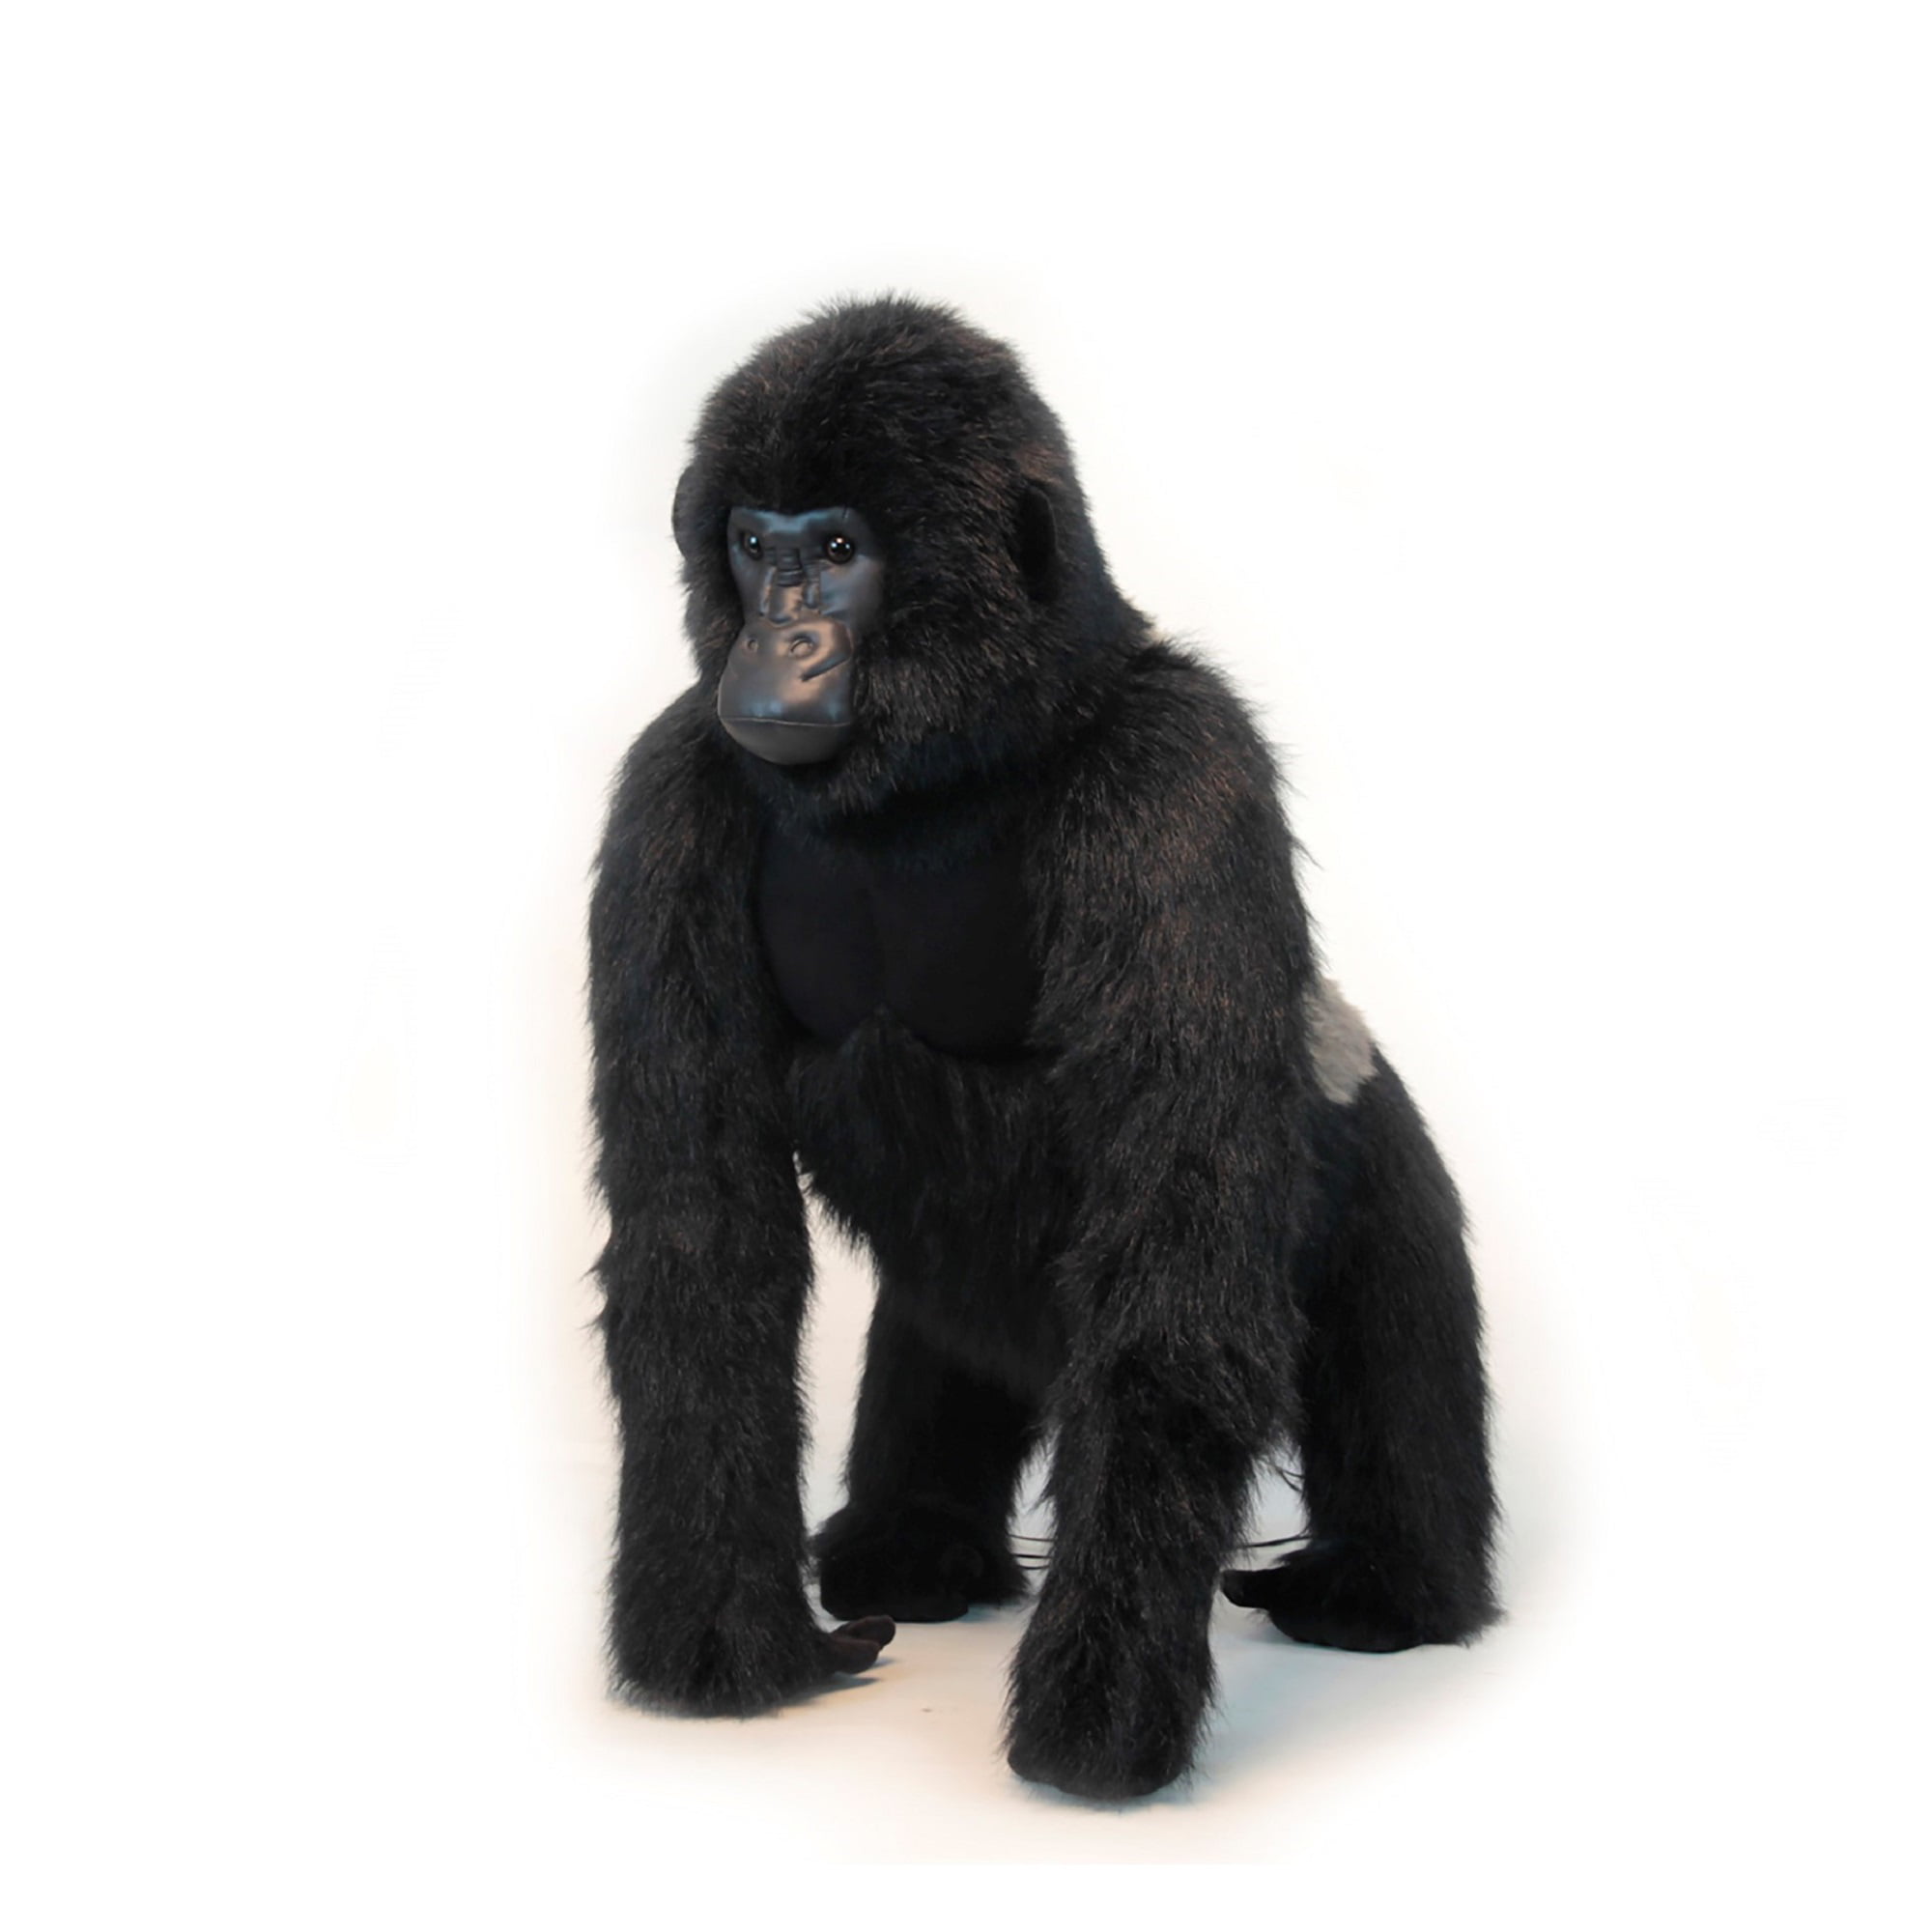 Гигантская горилла игрушка. Игрушка горилла из 90-х. Стоячая горилла. Мягкая игрушка горилла 45 см.